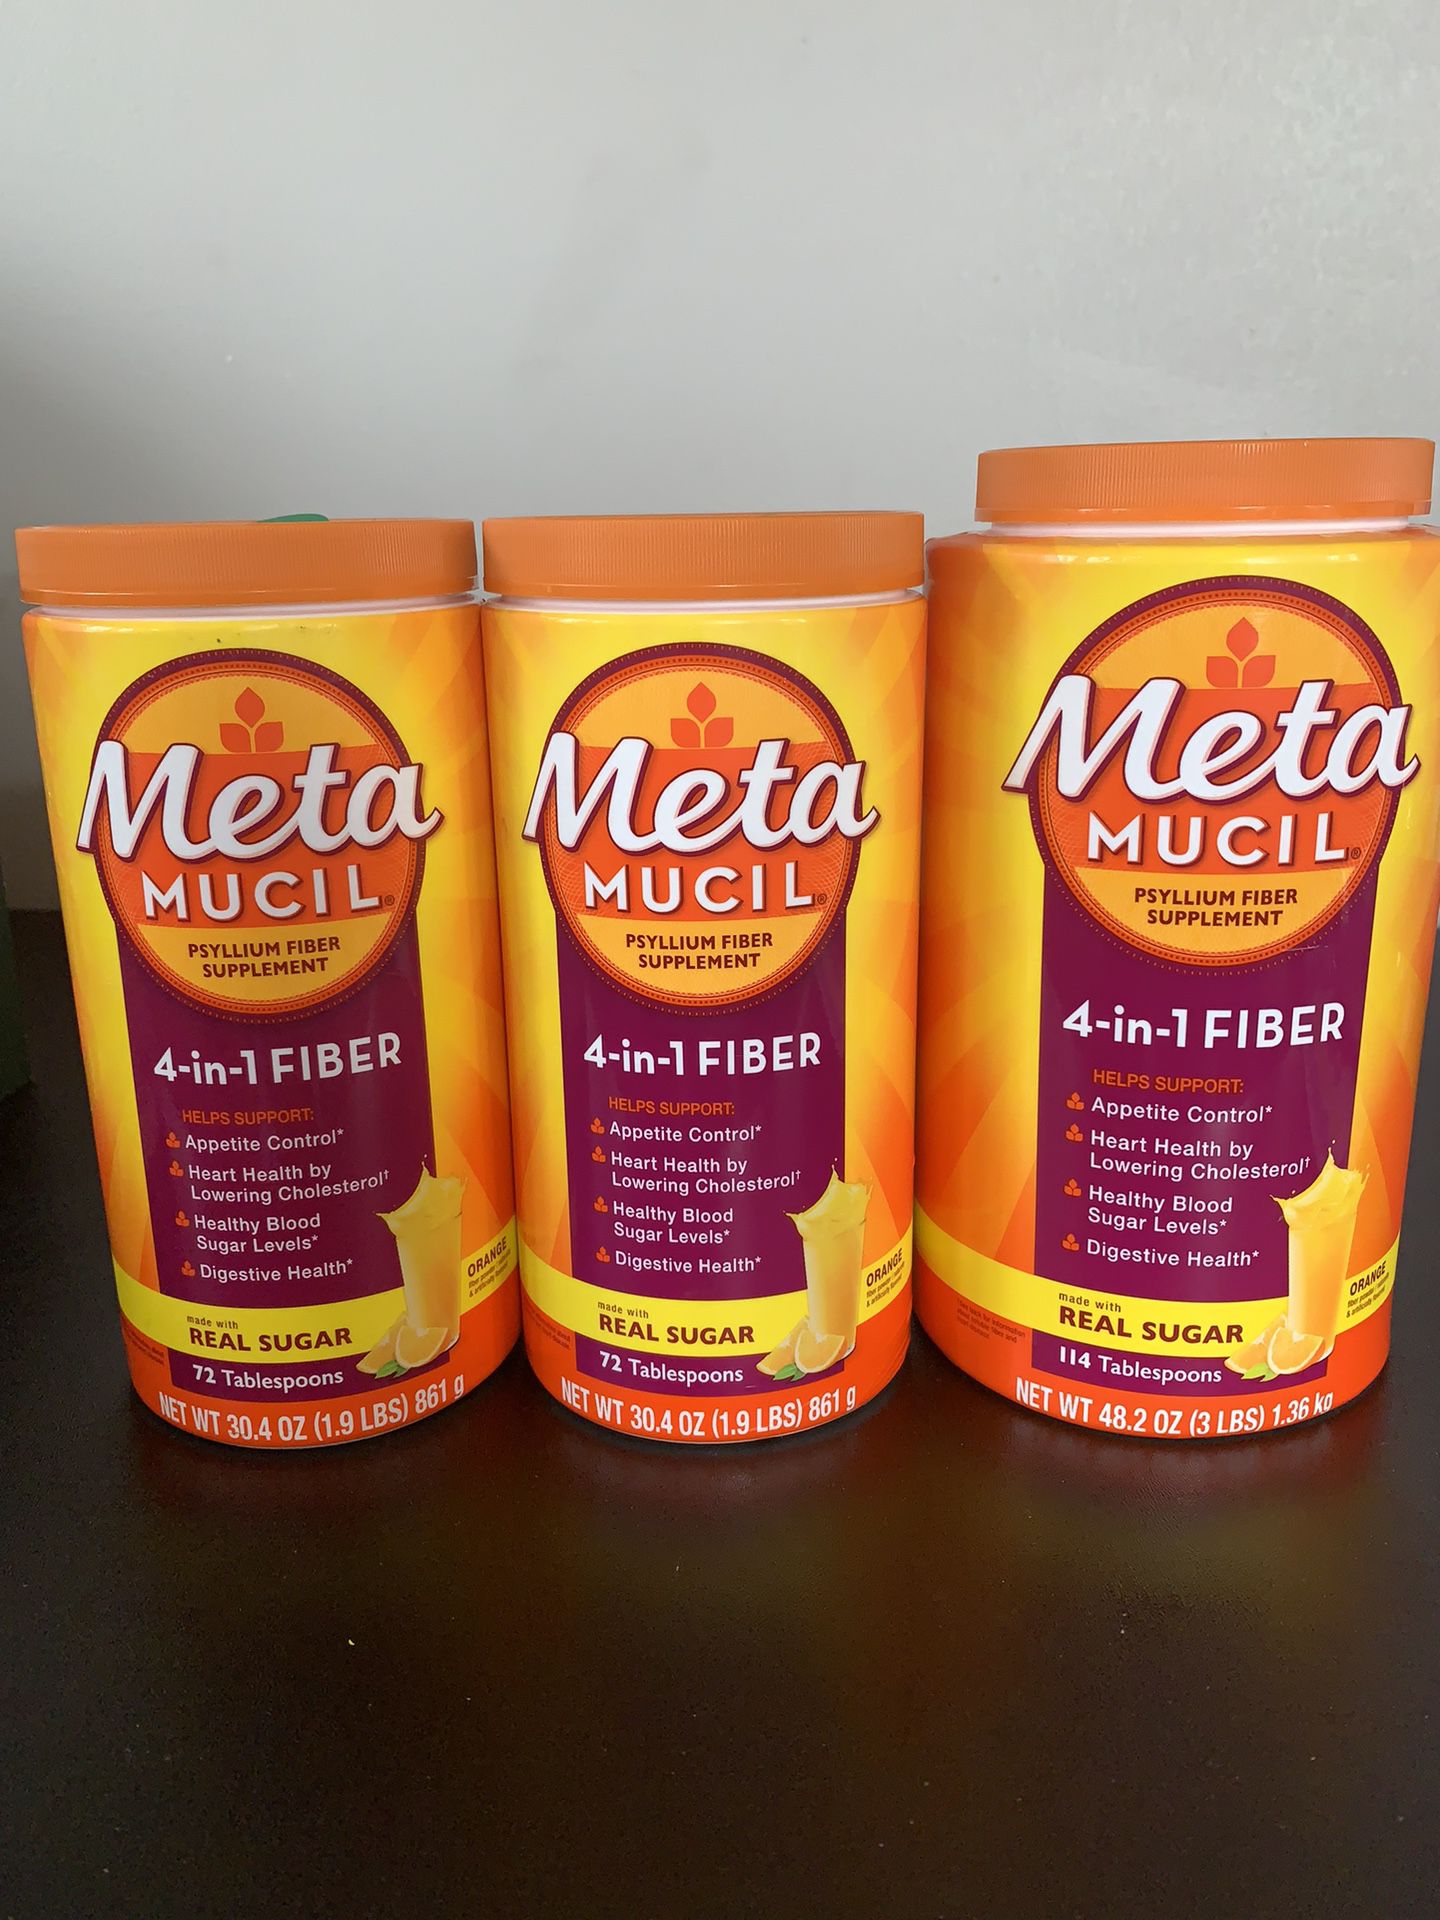 Metamucil psyllium fiber supplement 4-in-1 Fiber Orange 